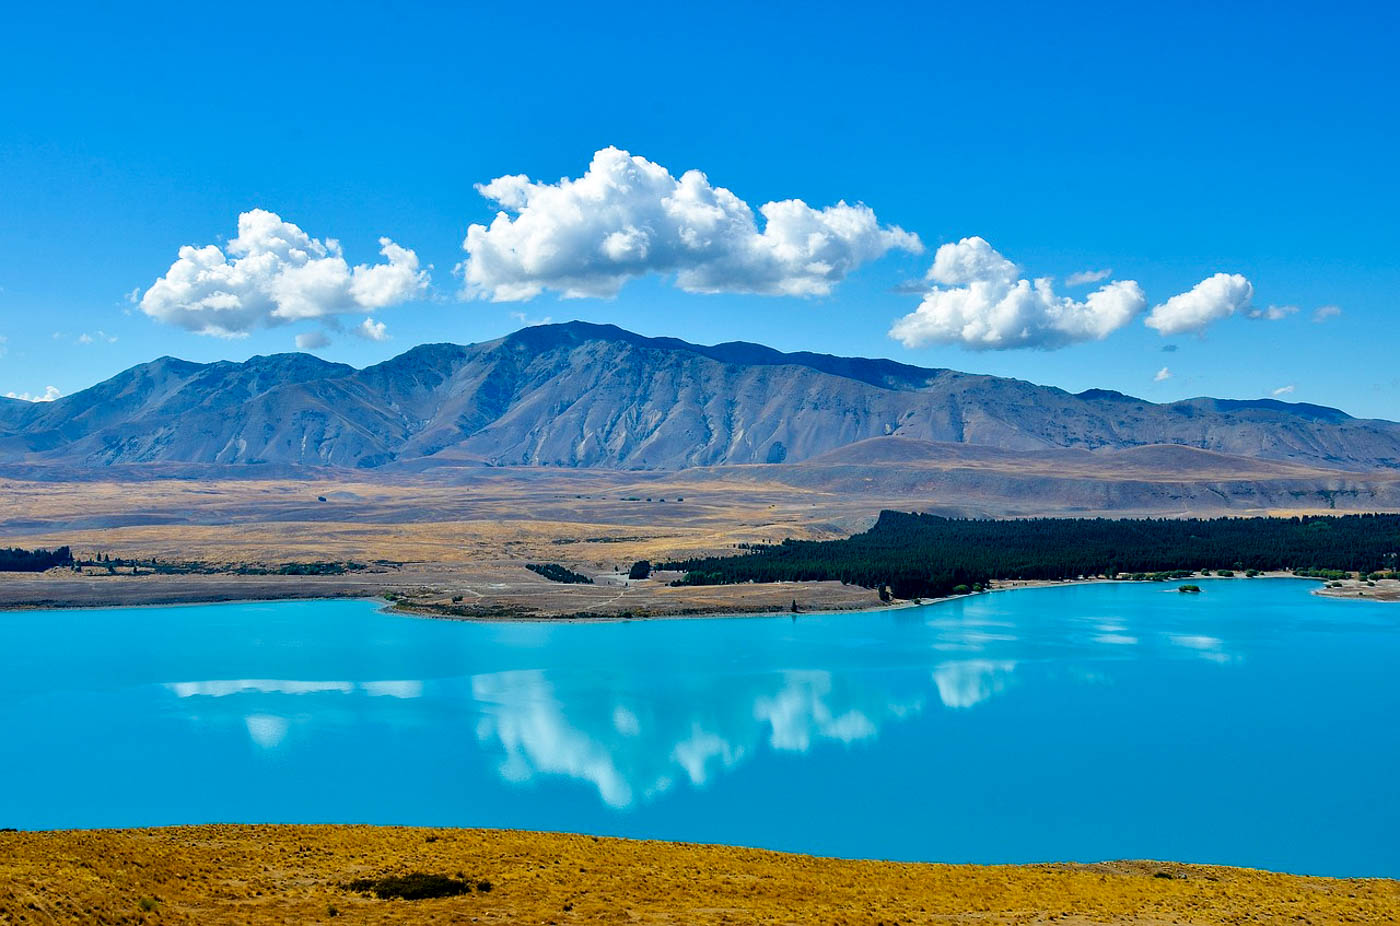 素有纽西兰最美湖泊的普卡基湖,不但有著超梦幻的淡蓝色湖水,加上后方